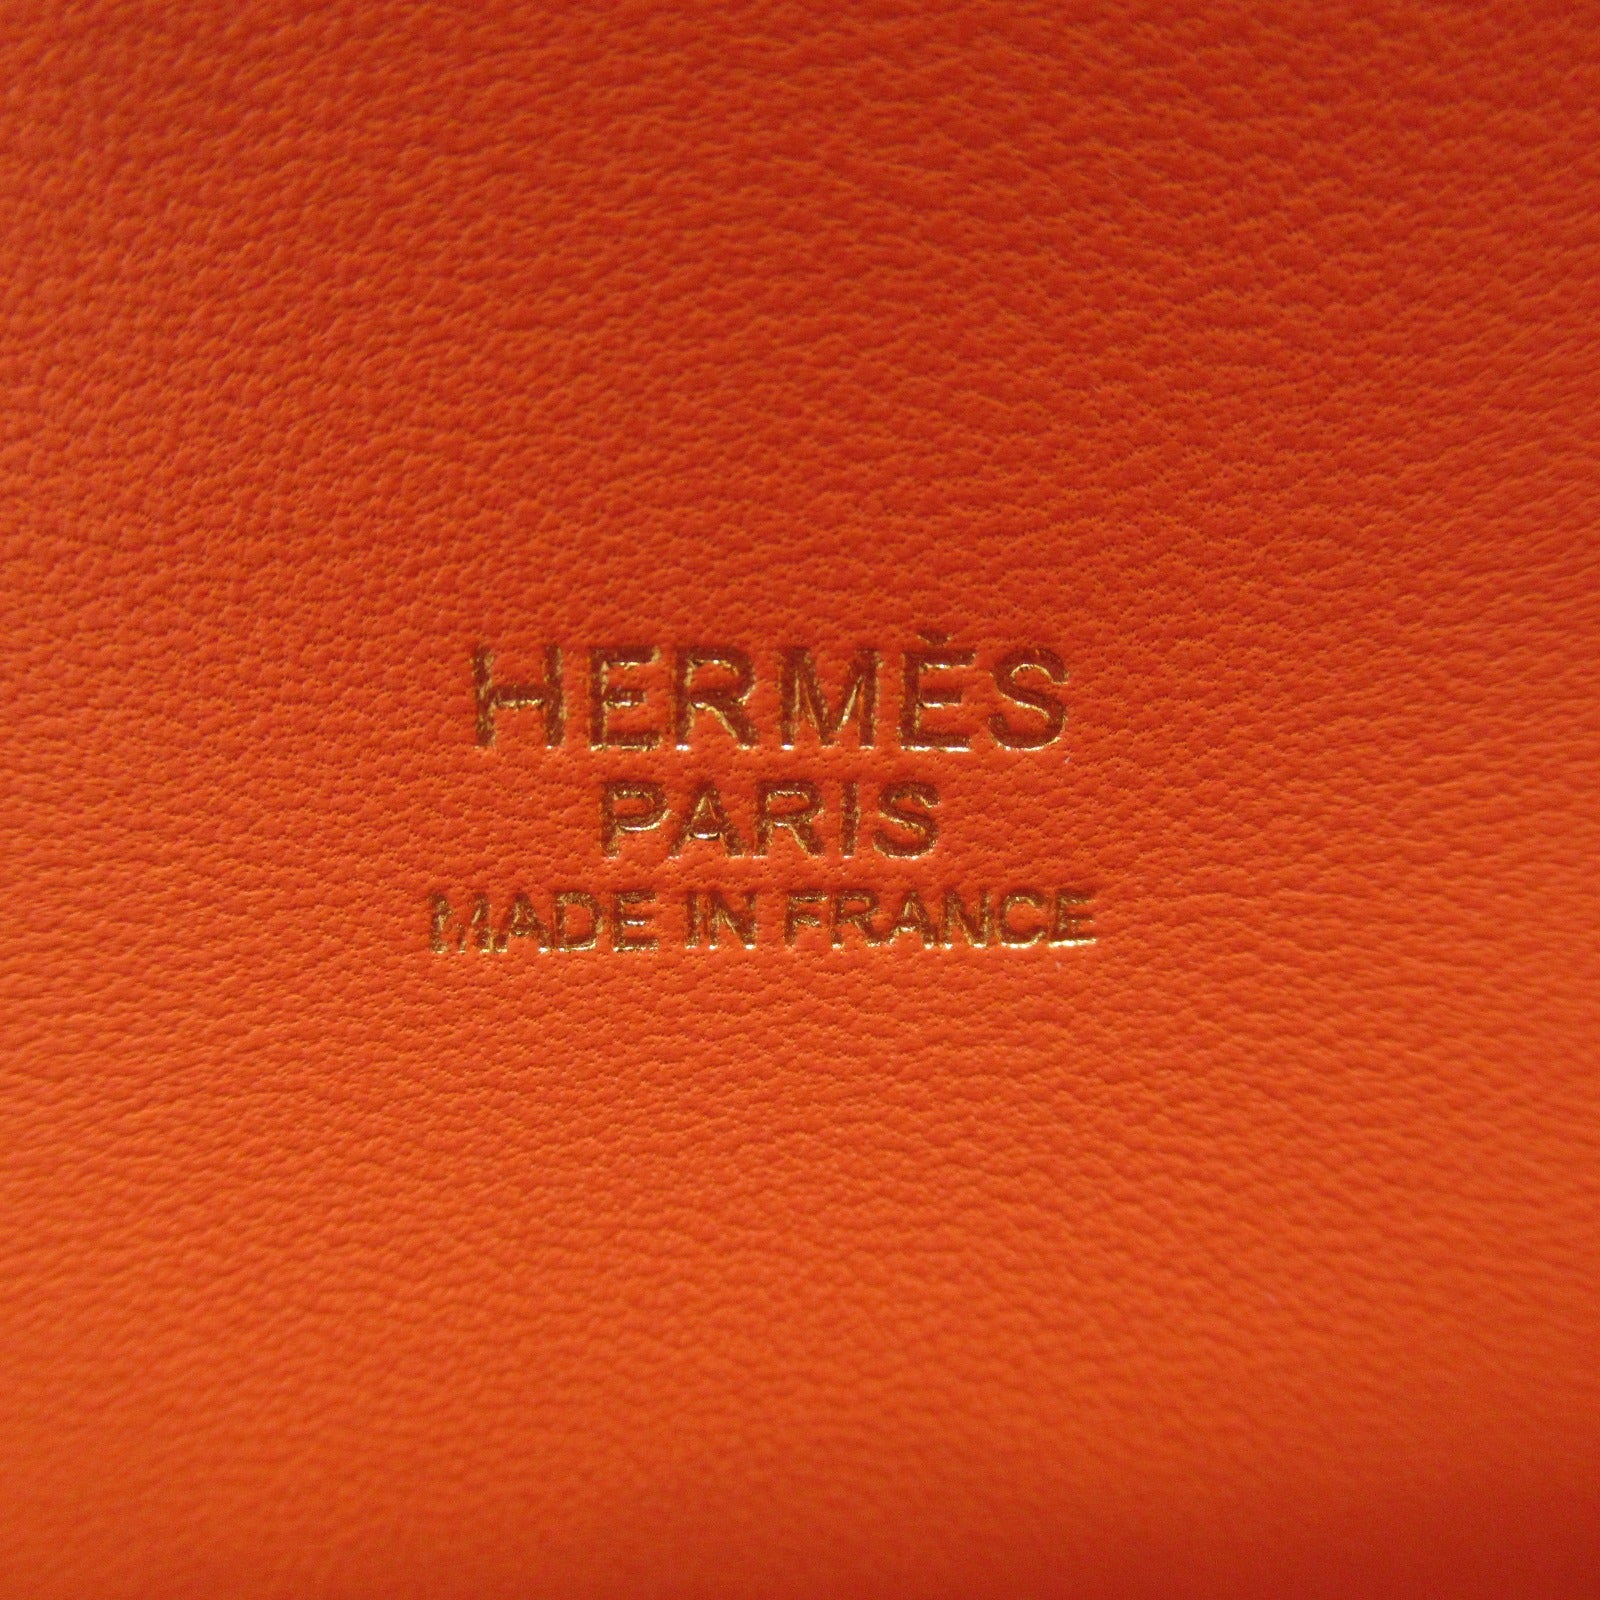 Hermes Boiled 31 Handbag Handbag Handbag Handbags Handbags Handbags Handbags Handbags Handbags Handbags Handbags Handbags Handbags Handbags Handbags Handbags